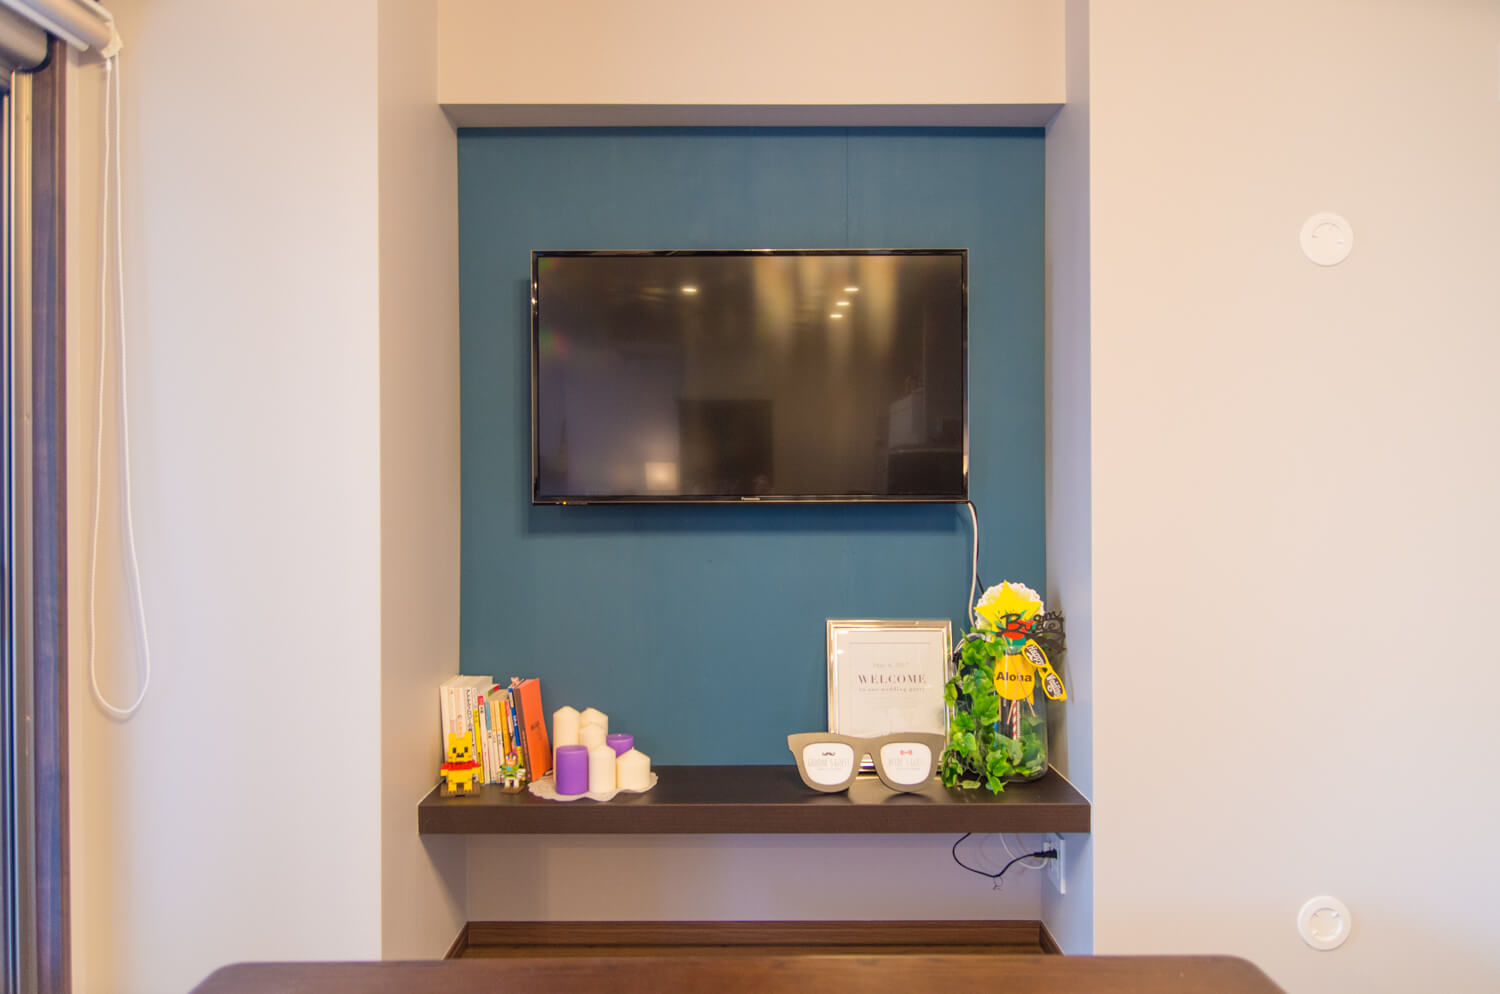 ディアウォール、ラブリコで作った棚・壁・壁掛けテレビの作例まとめ | 99% DIY -DIYブログ-